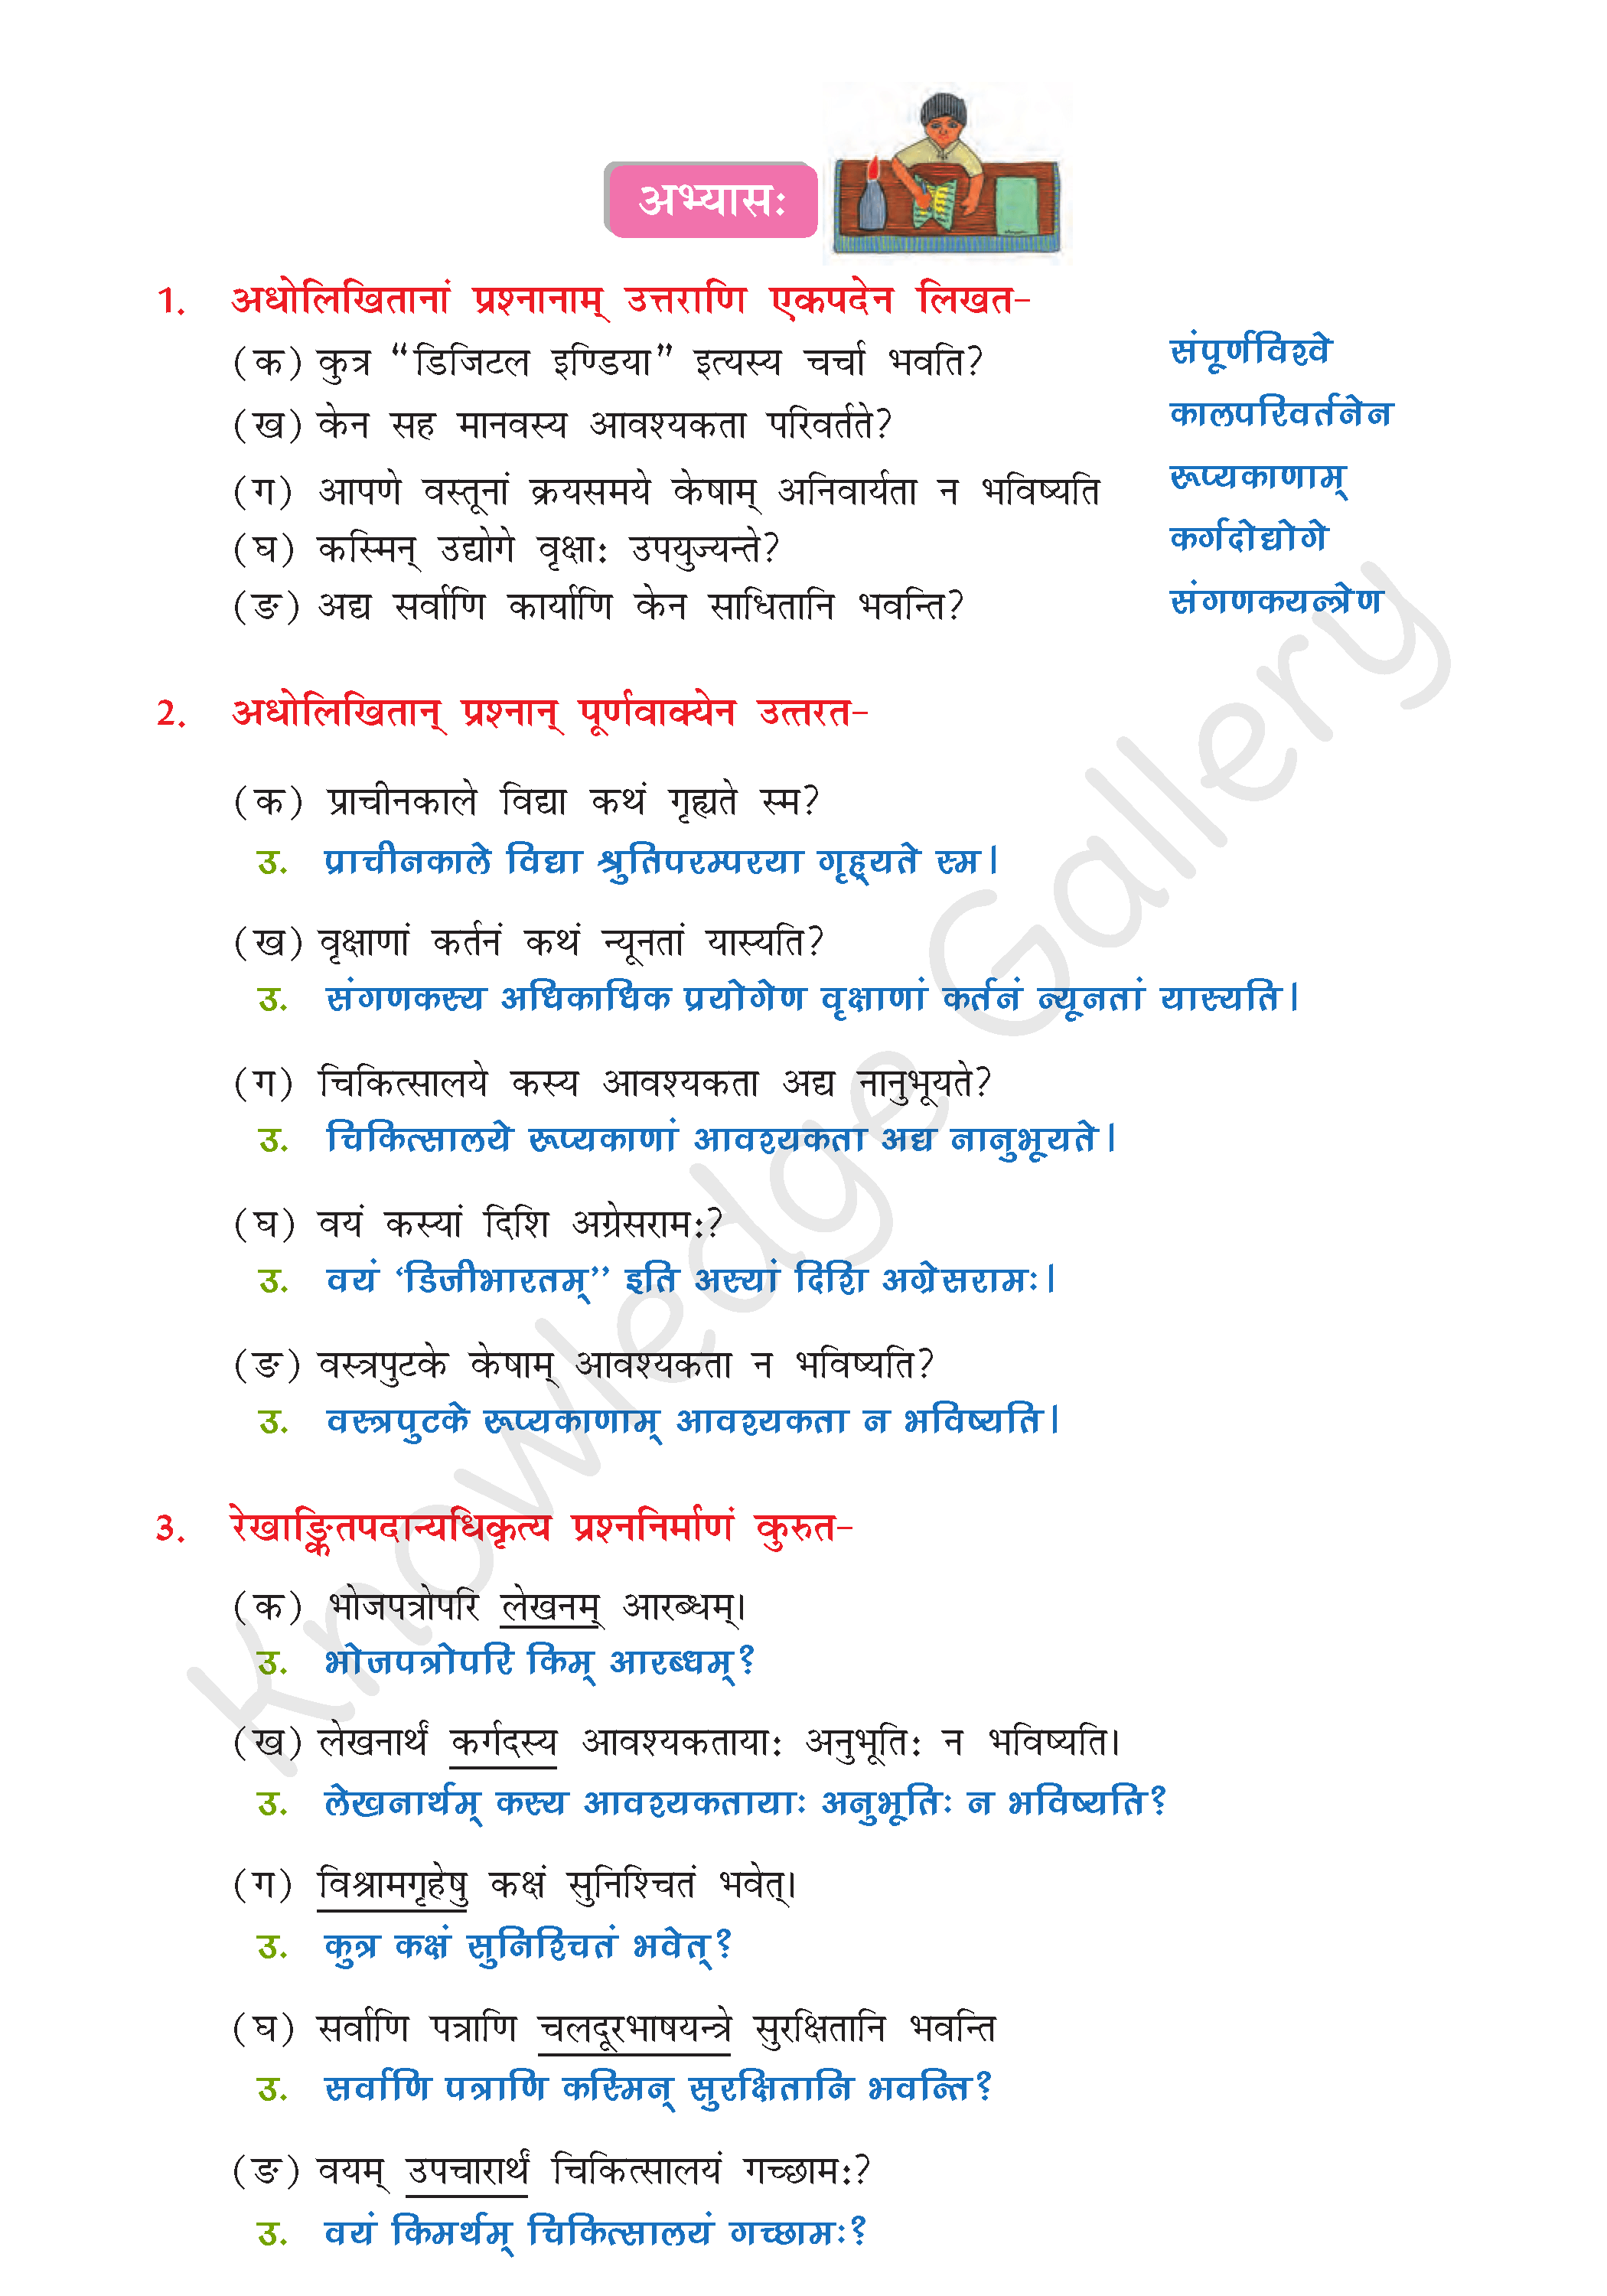 NCERT Solution For Class 8 Sanskrit Chapter 3 part 4